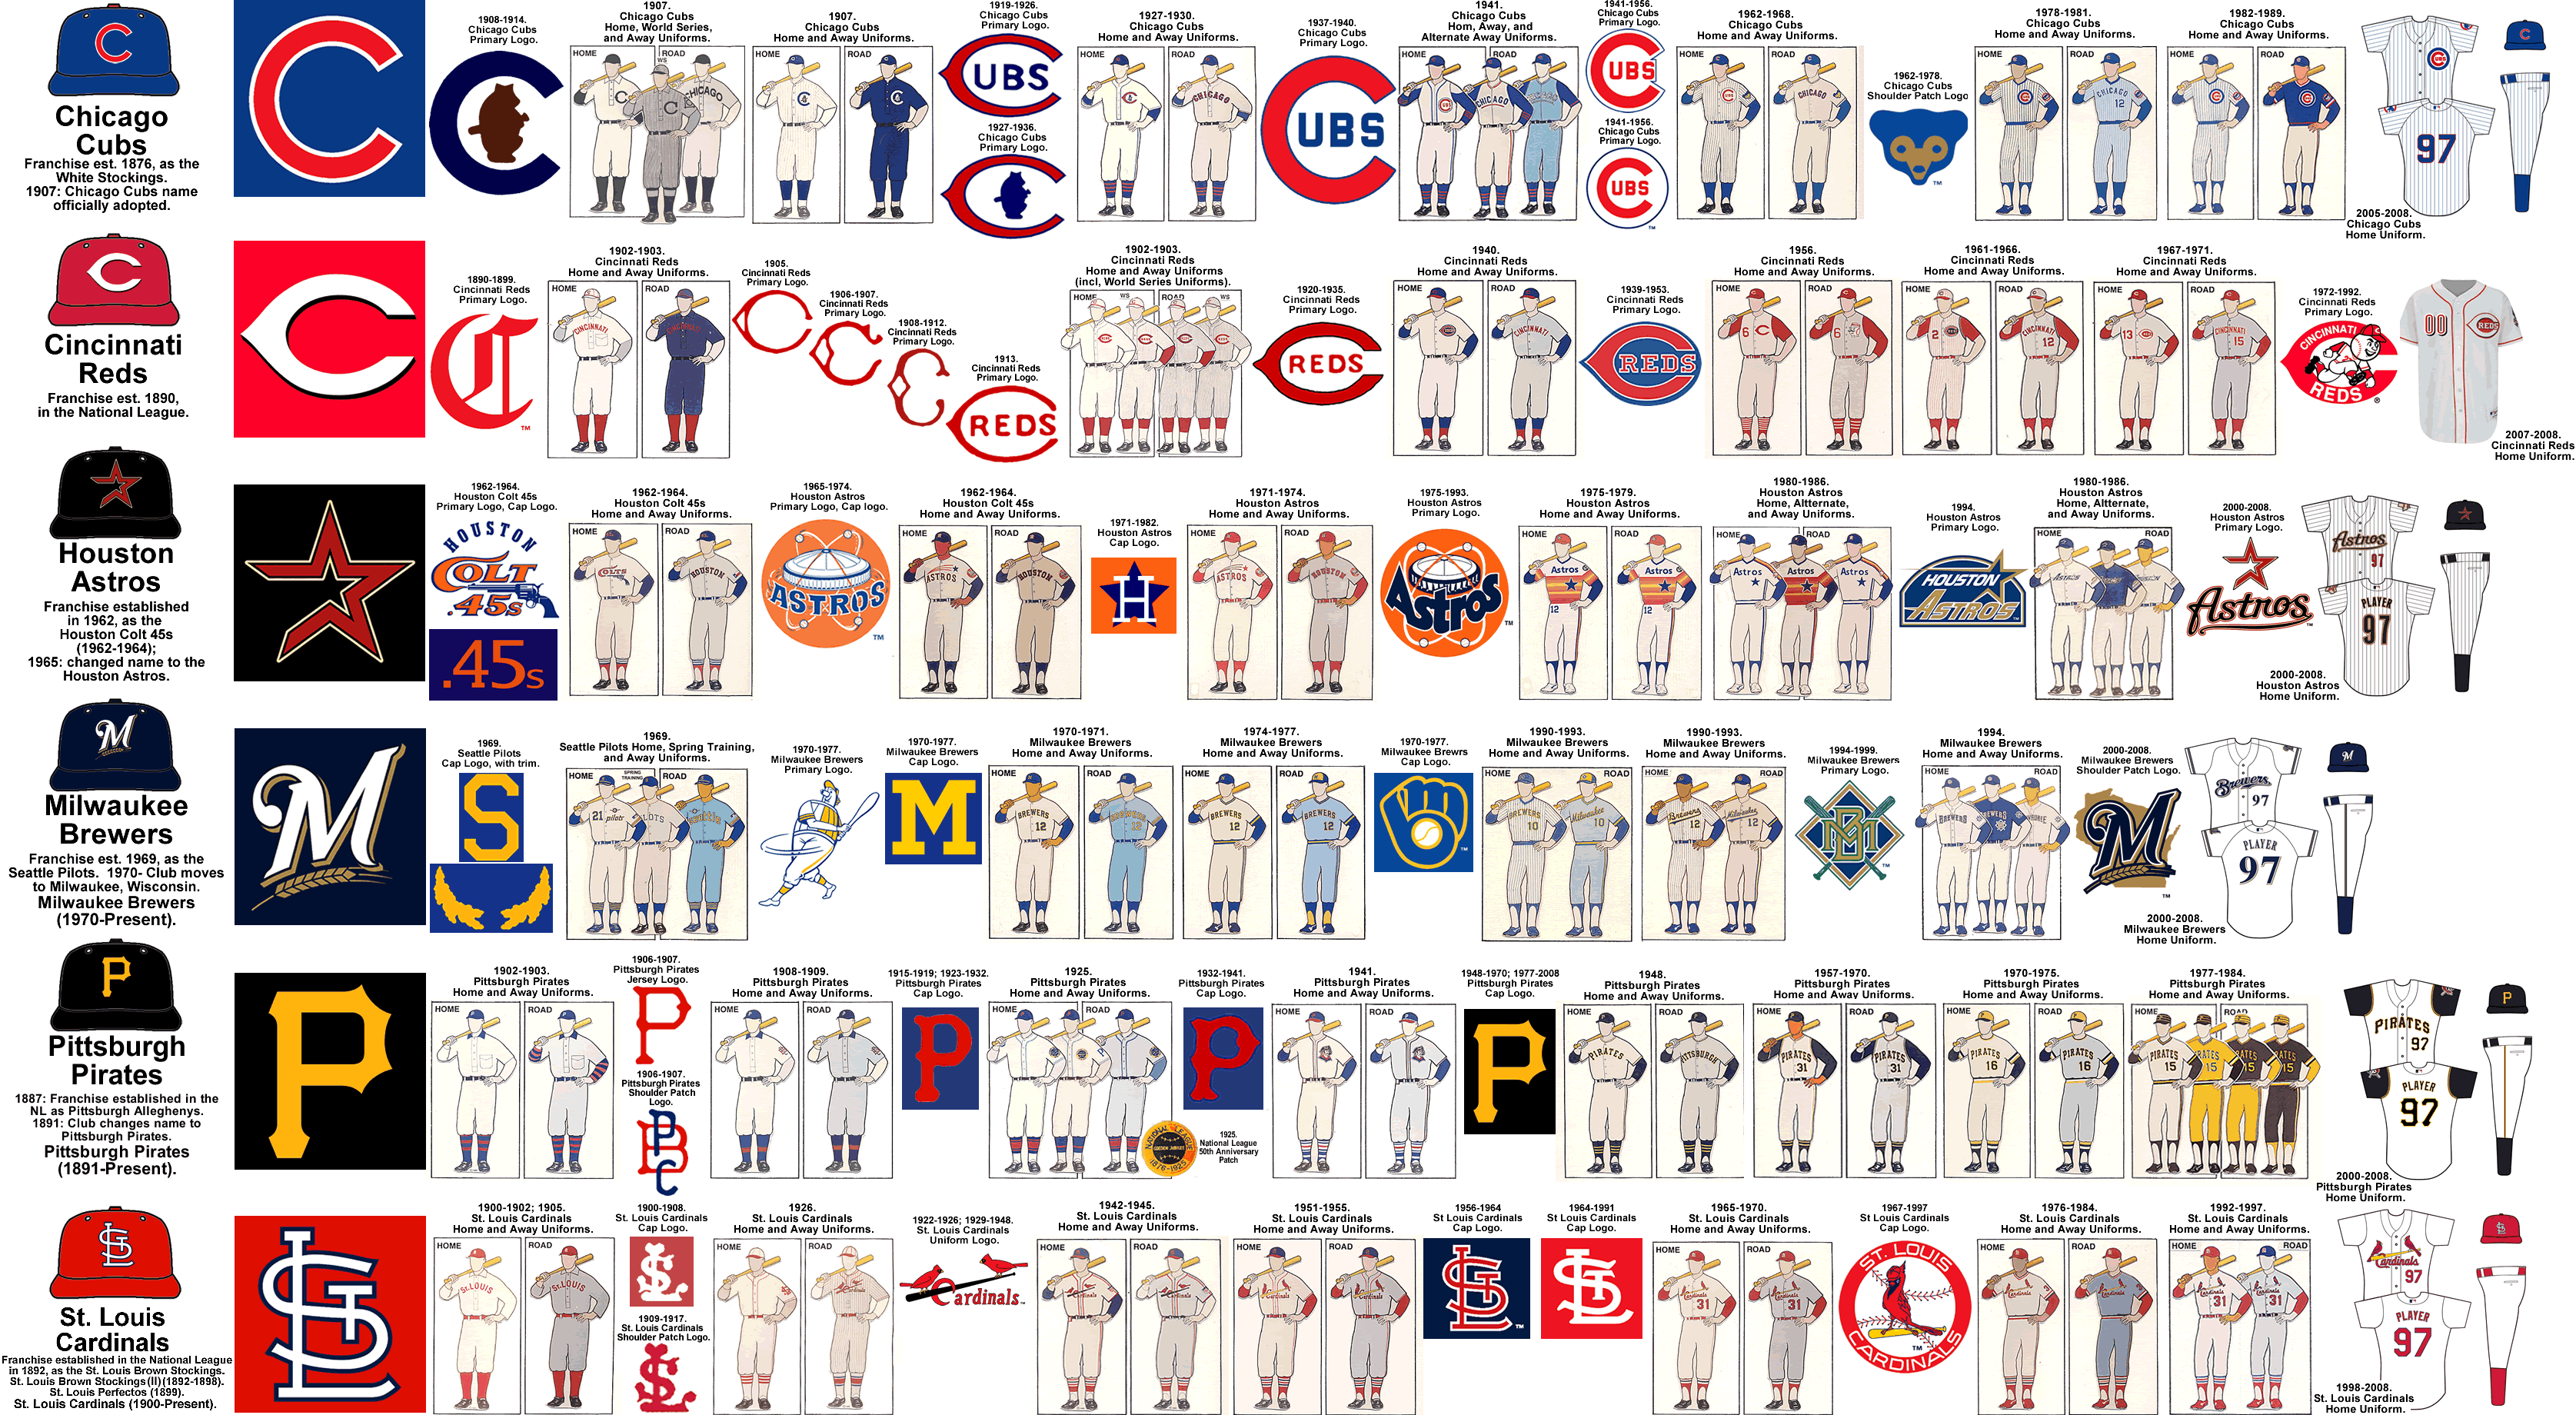 minor league baseball teams